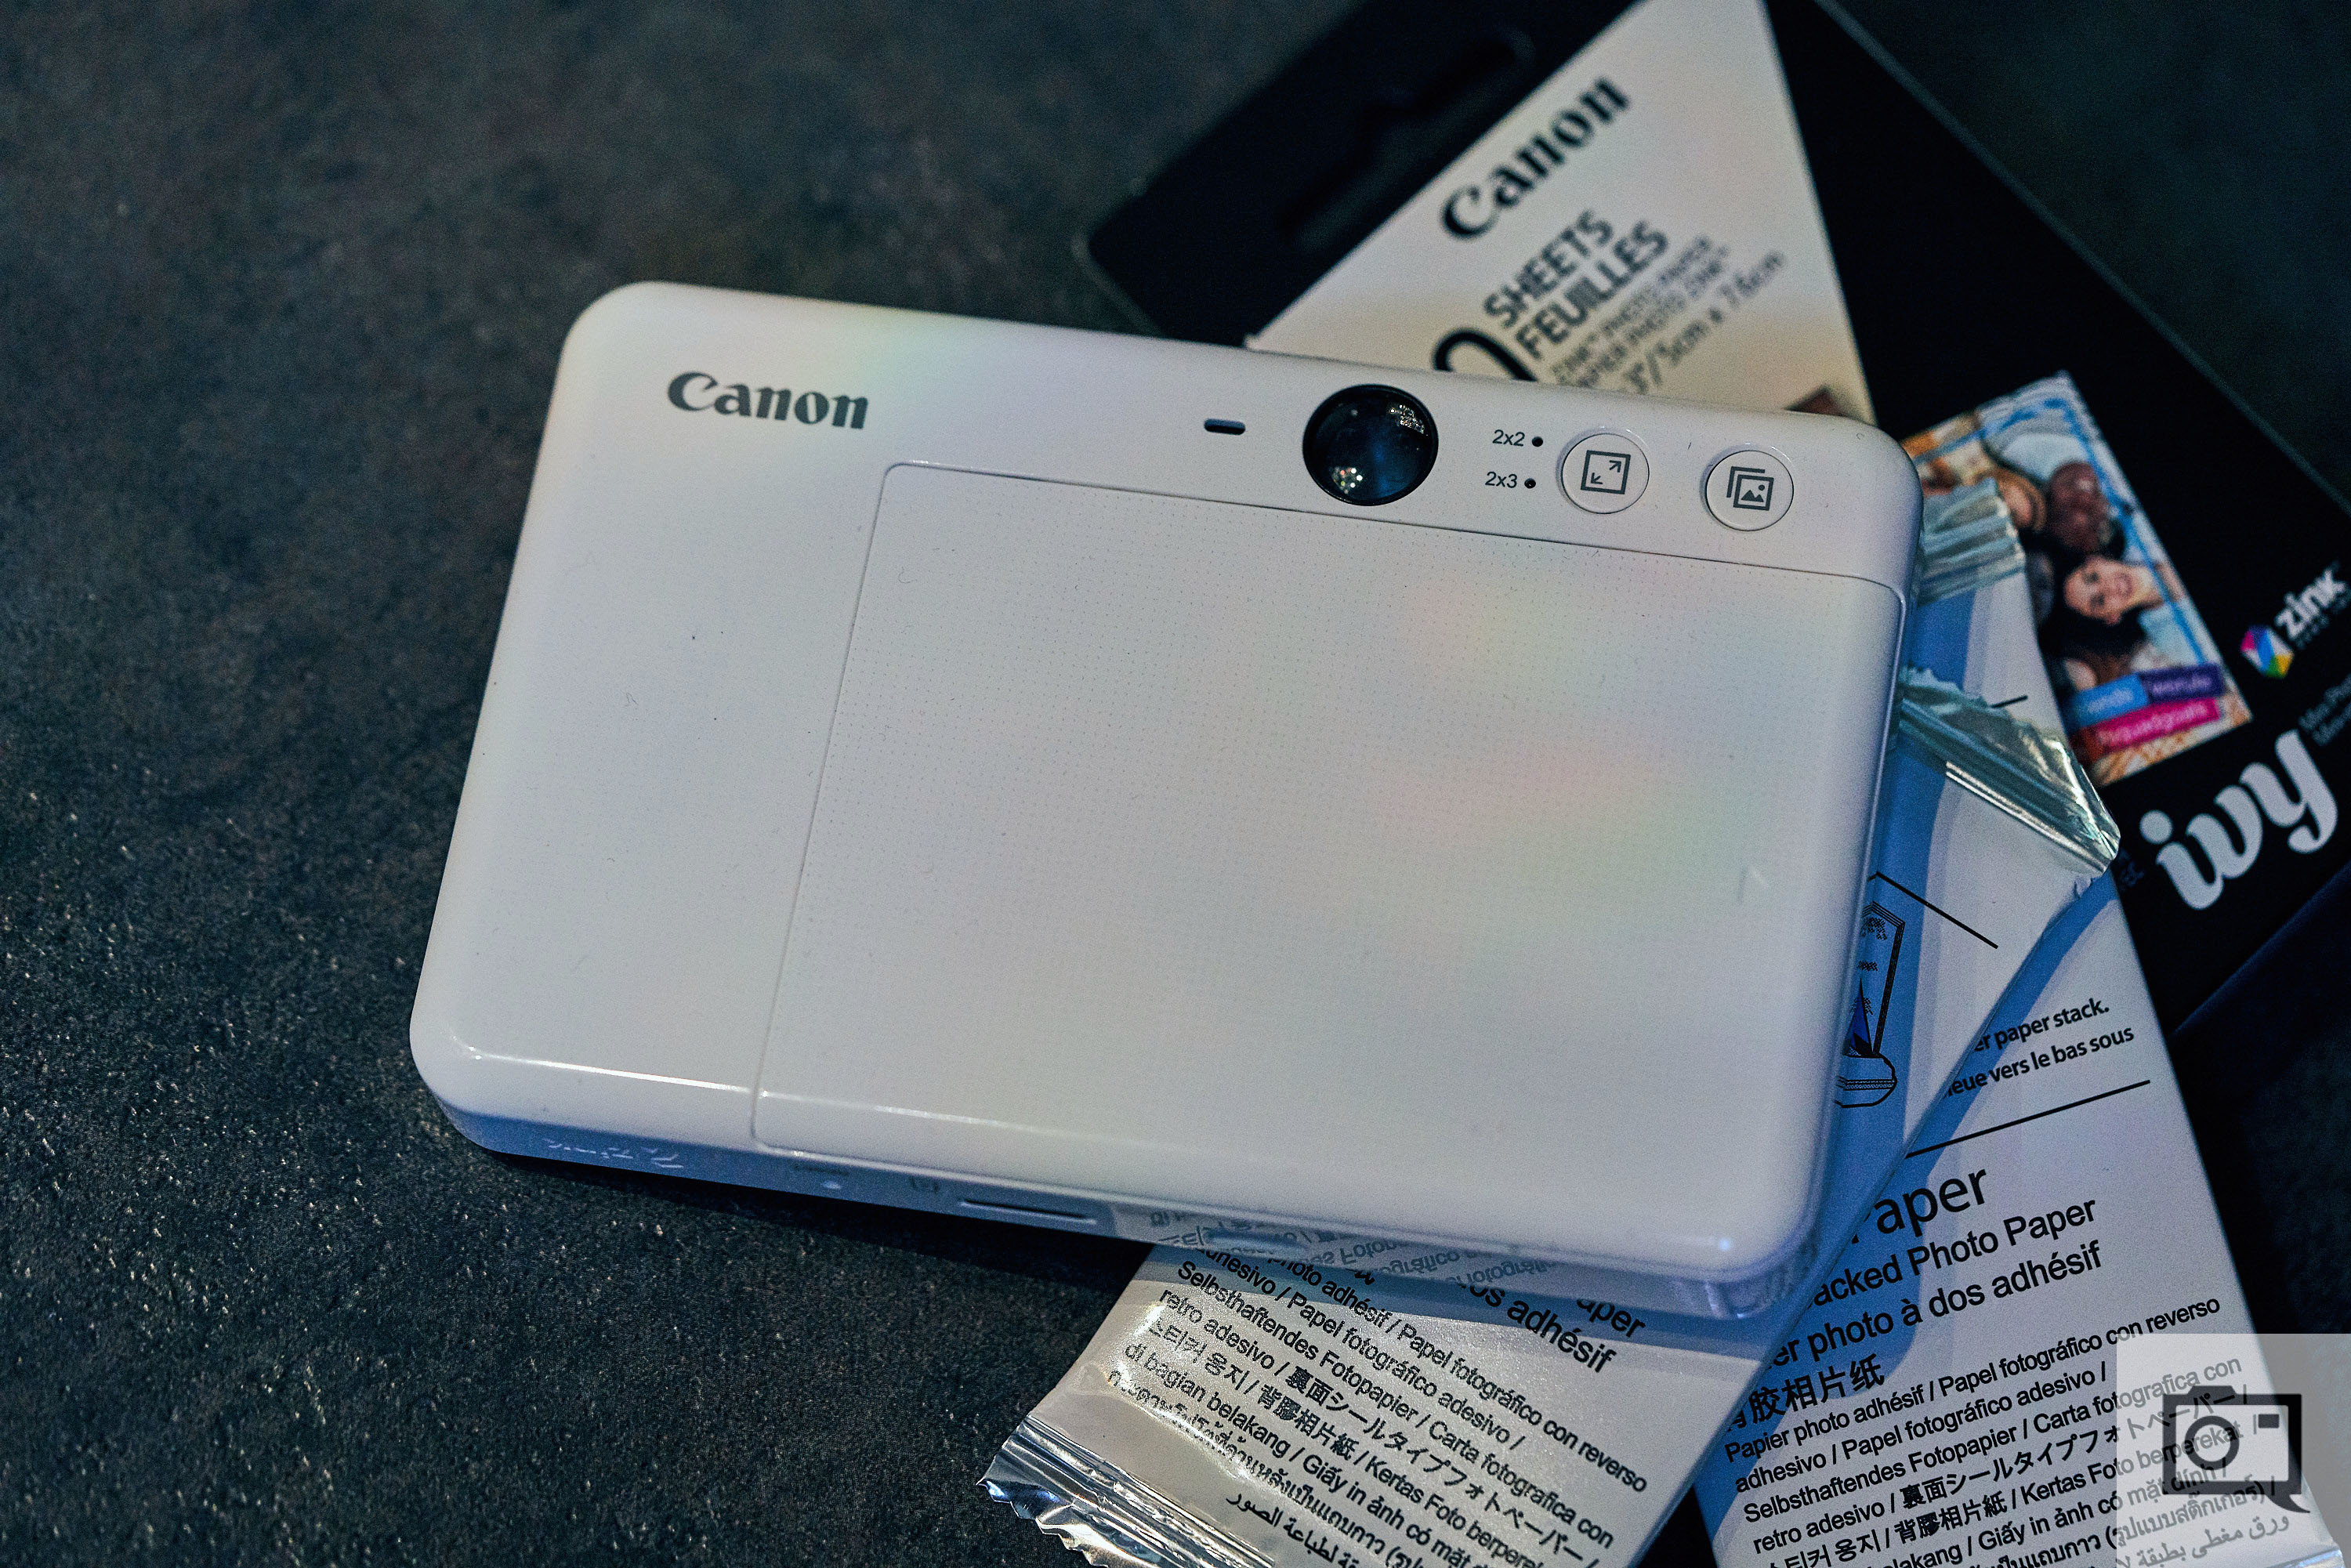 Canon Zoemini S IVY Cliq+ review